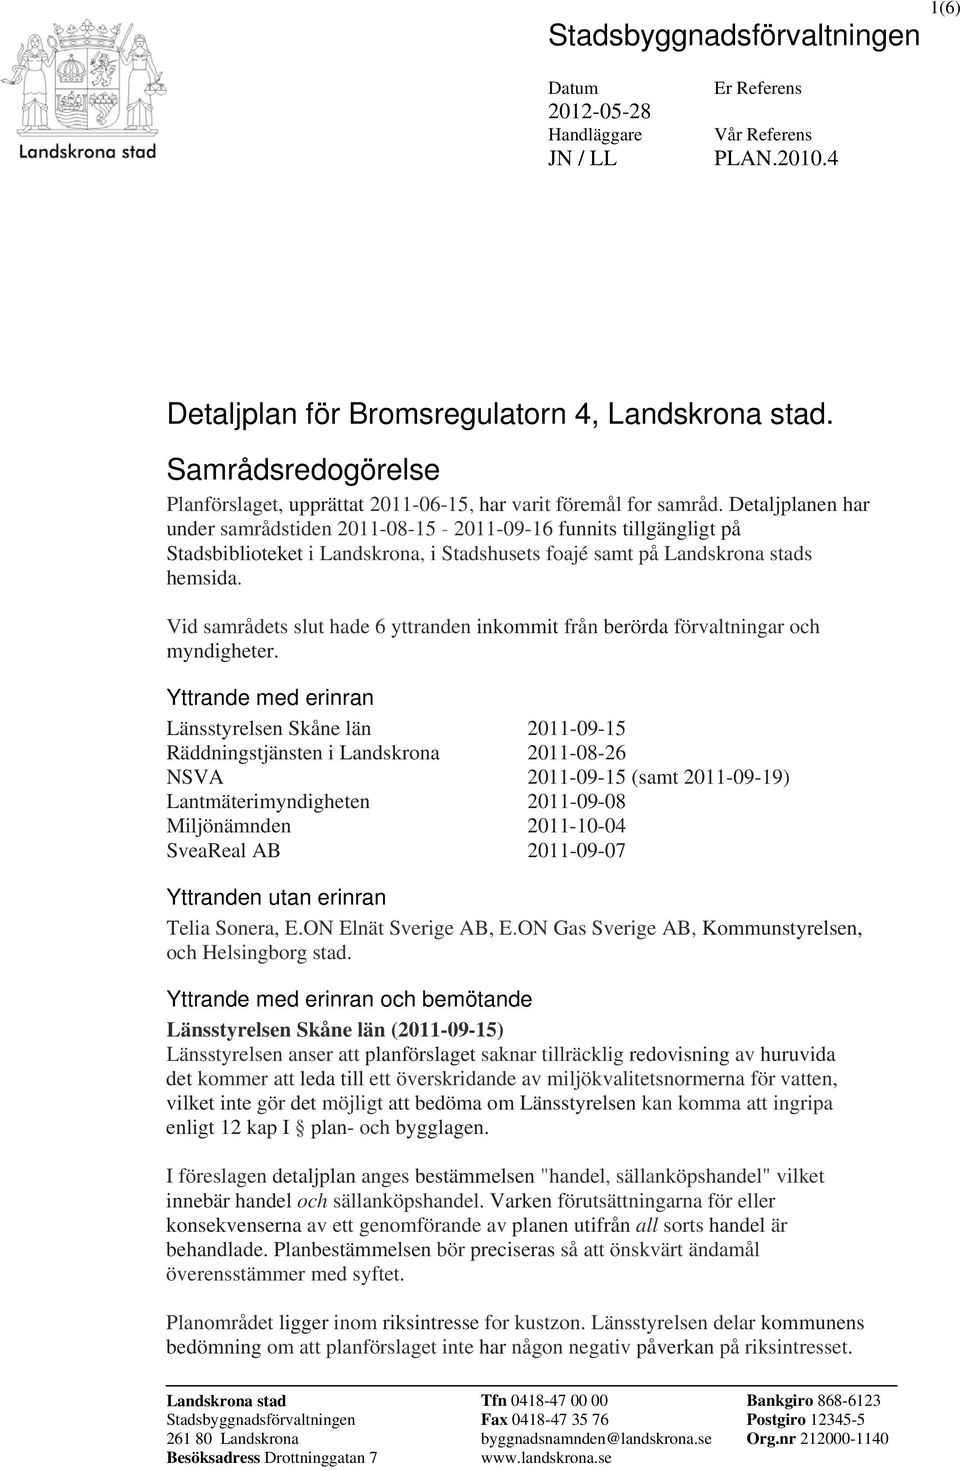 Detaljplanen har under samrådstiden 2011-08-15-2011-09-16 funnits tillgängligt på Stadsbiblioteket i Landskrona, i Stadshusets foajé samt på Landskrona stads hemsida.